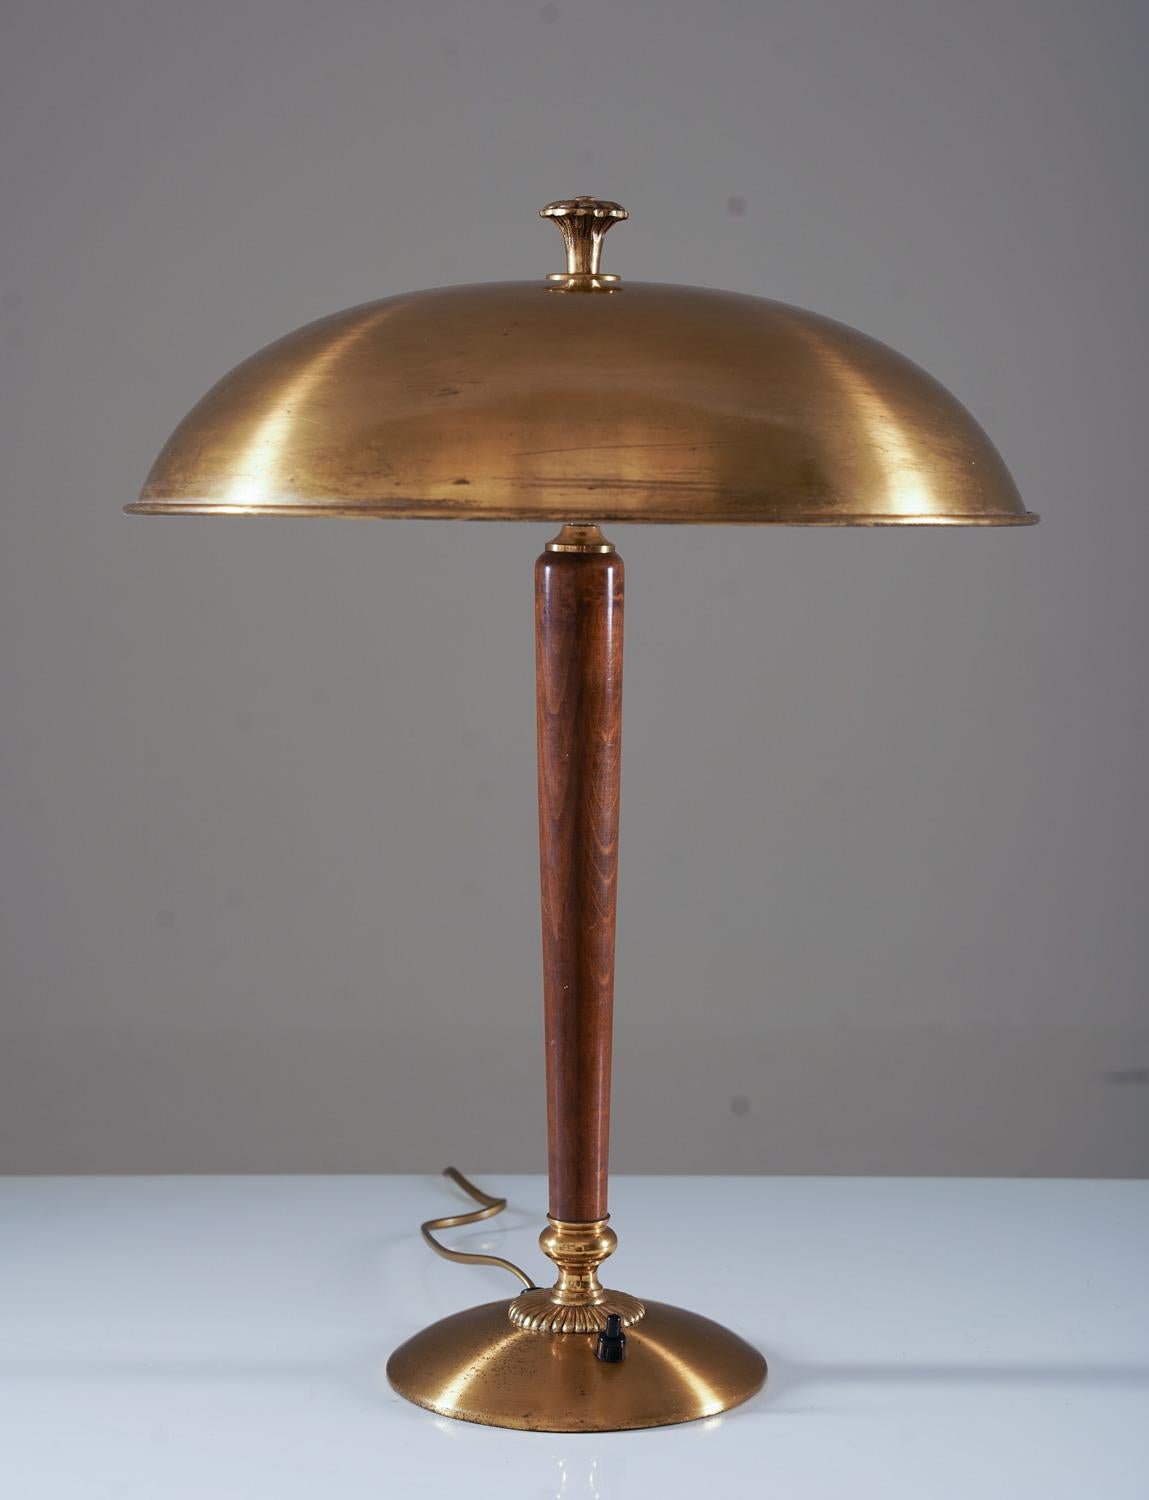 Élégante lampe de table scandinave de Nordiska Kompaniet (NK), Suède, années 1920.
Cette lampe est fabriquée en laiton massif avec des détails en acajou.

Condit : Très bon état avec patine et taches sur le laiton. L'intérieur de l'abat-jour a été